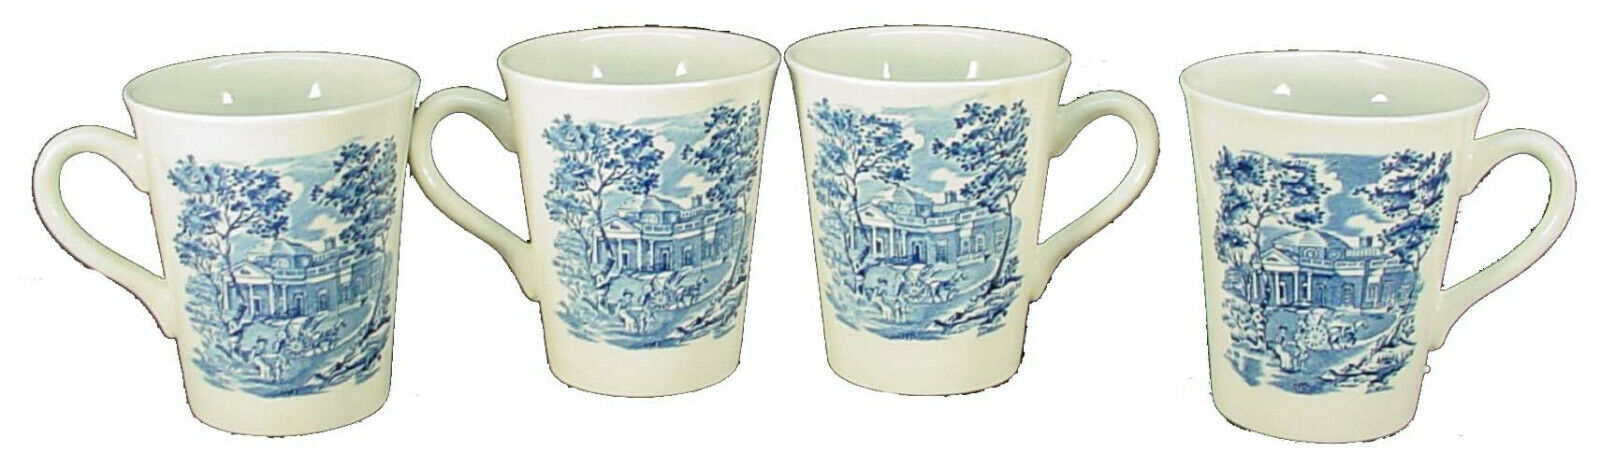 Staffordshire China Liberty Blue Pattern 4 Mugs - 3-3/4" - Clean Glaze Crazing